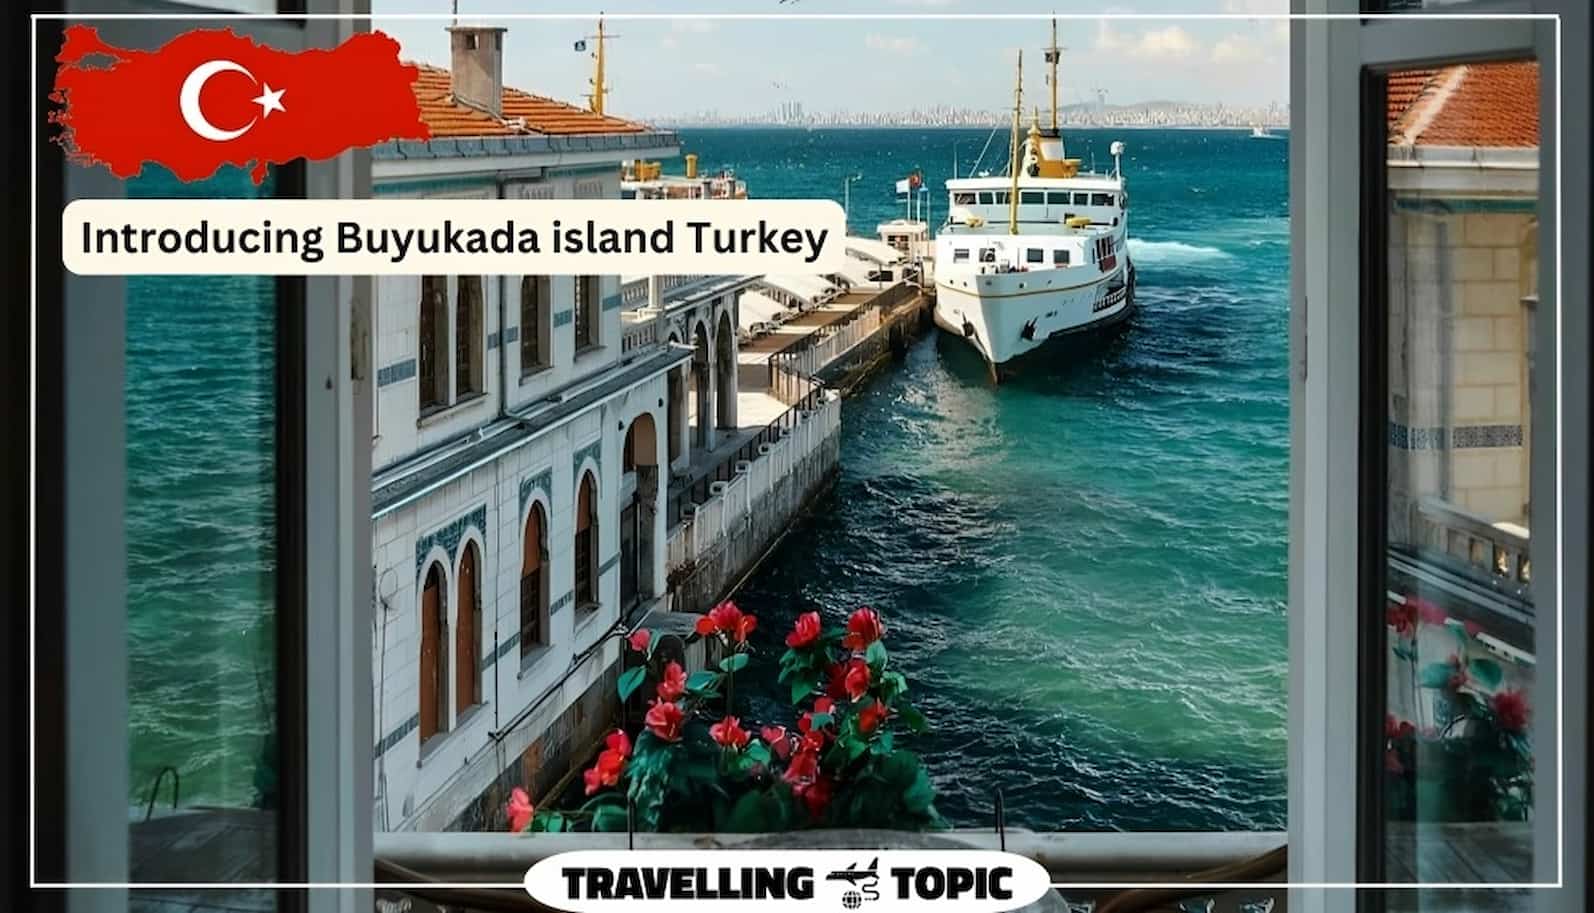 Introducing Buyukada island Turkey